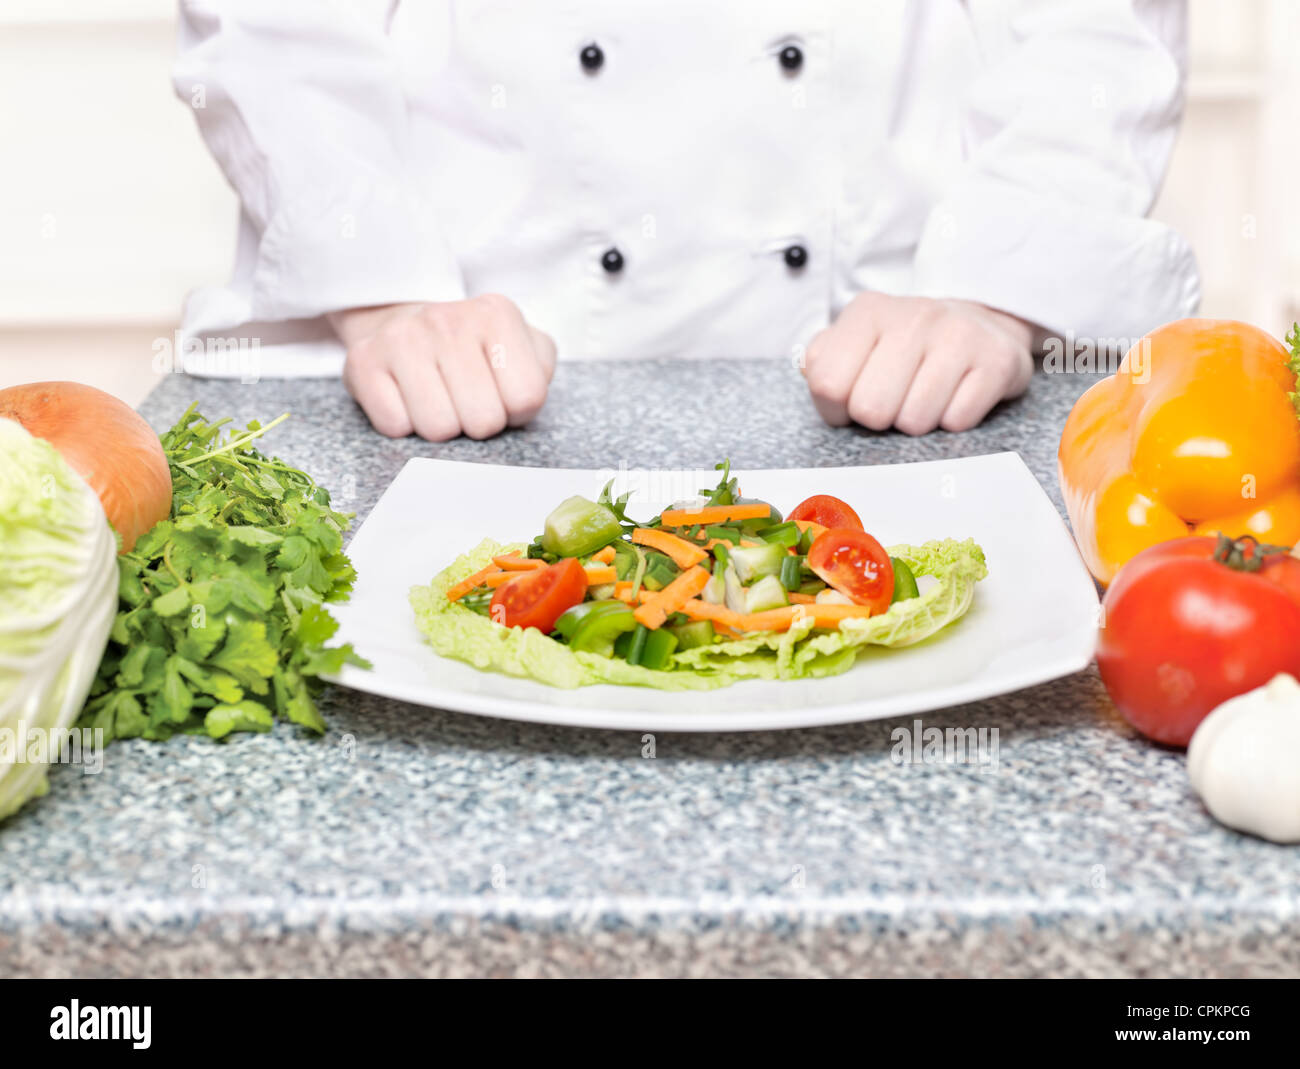 Salat auf Teller vor einem Koch Stockfoto